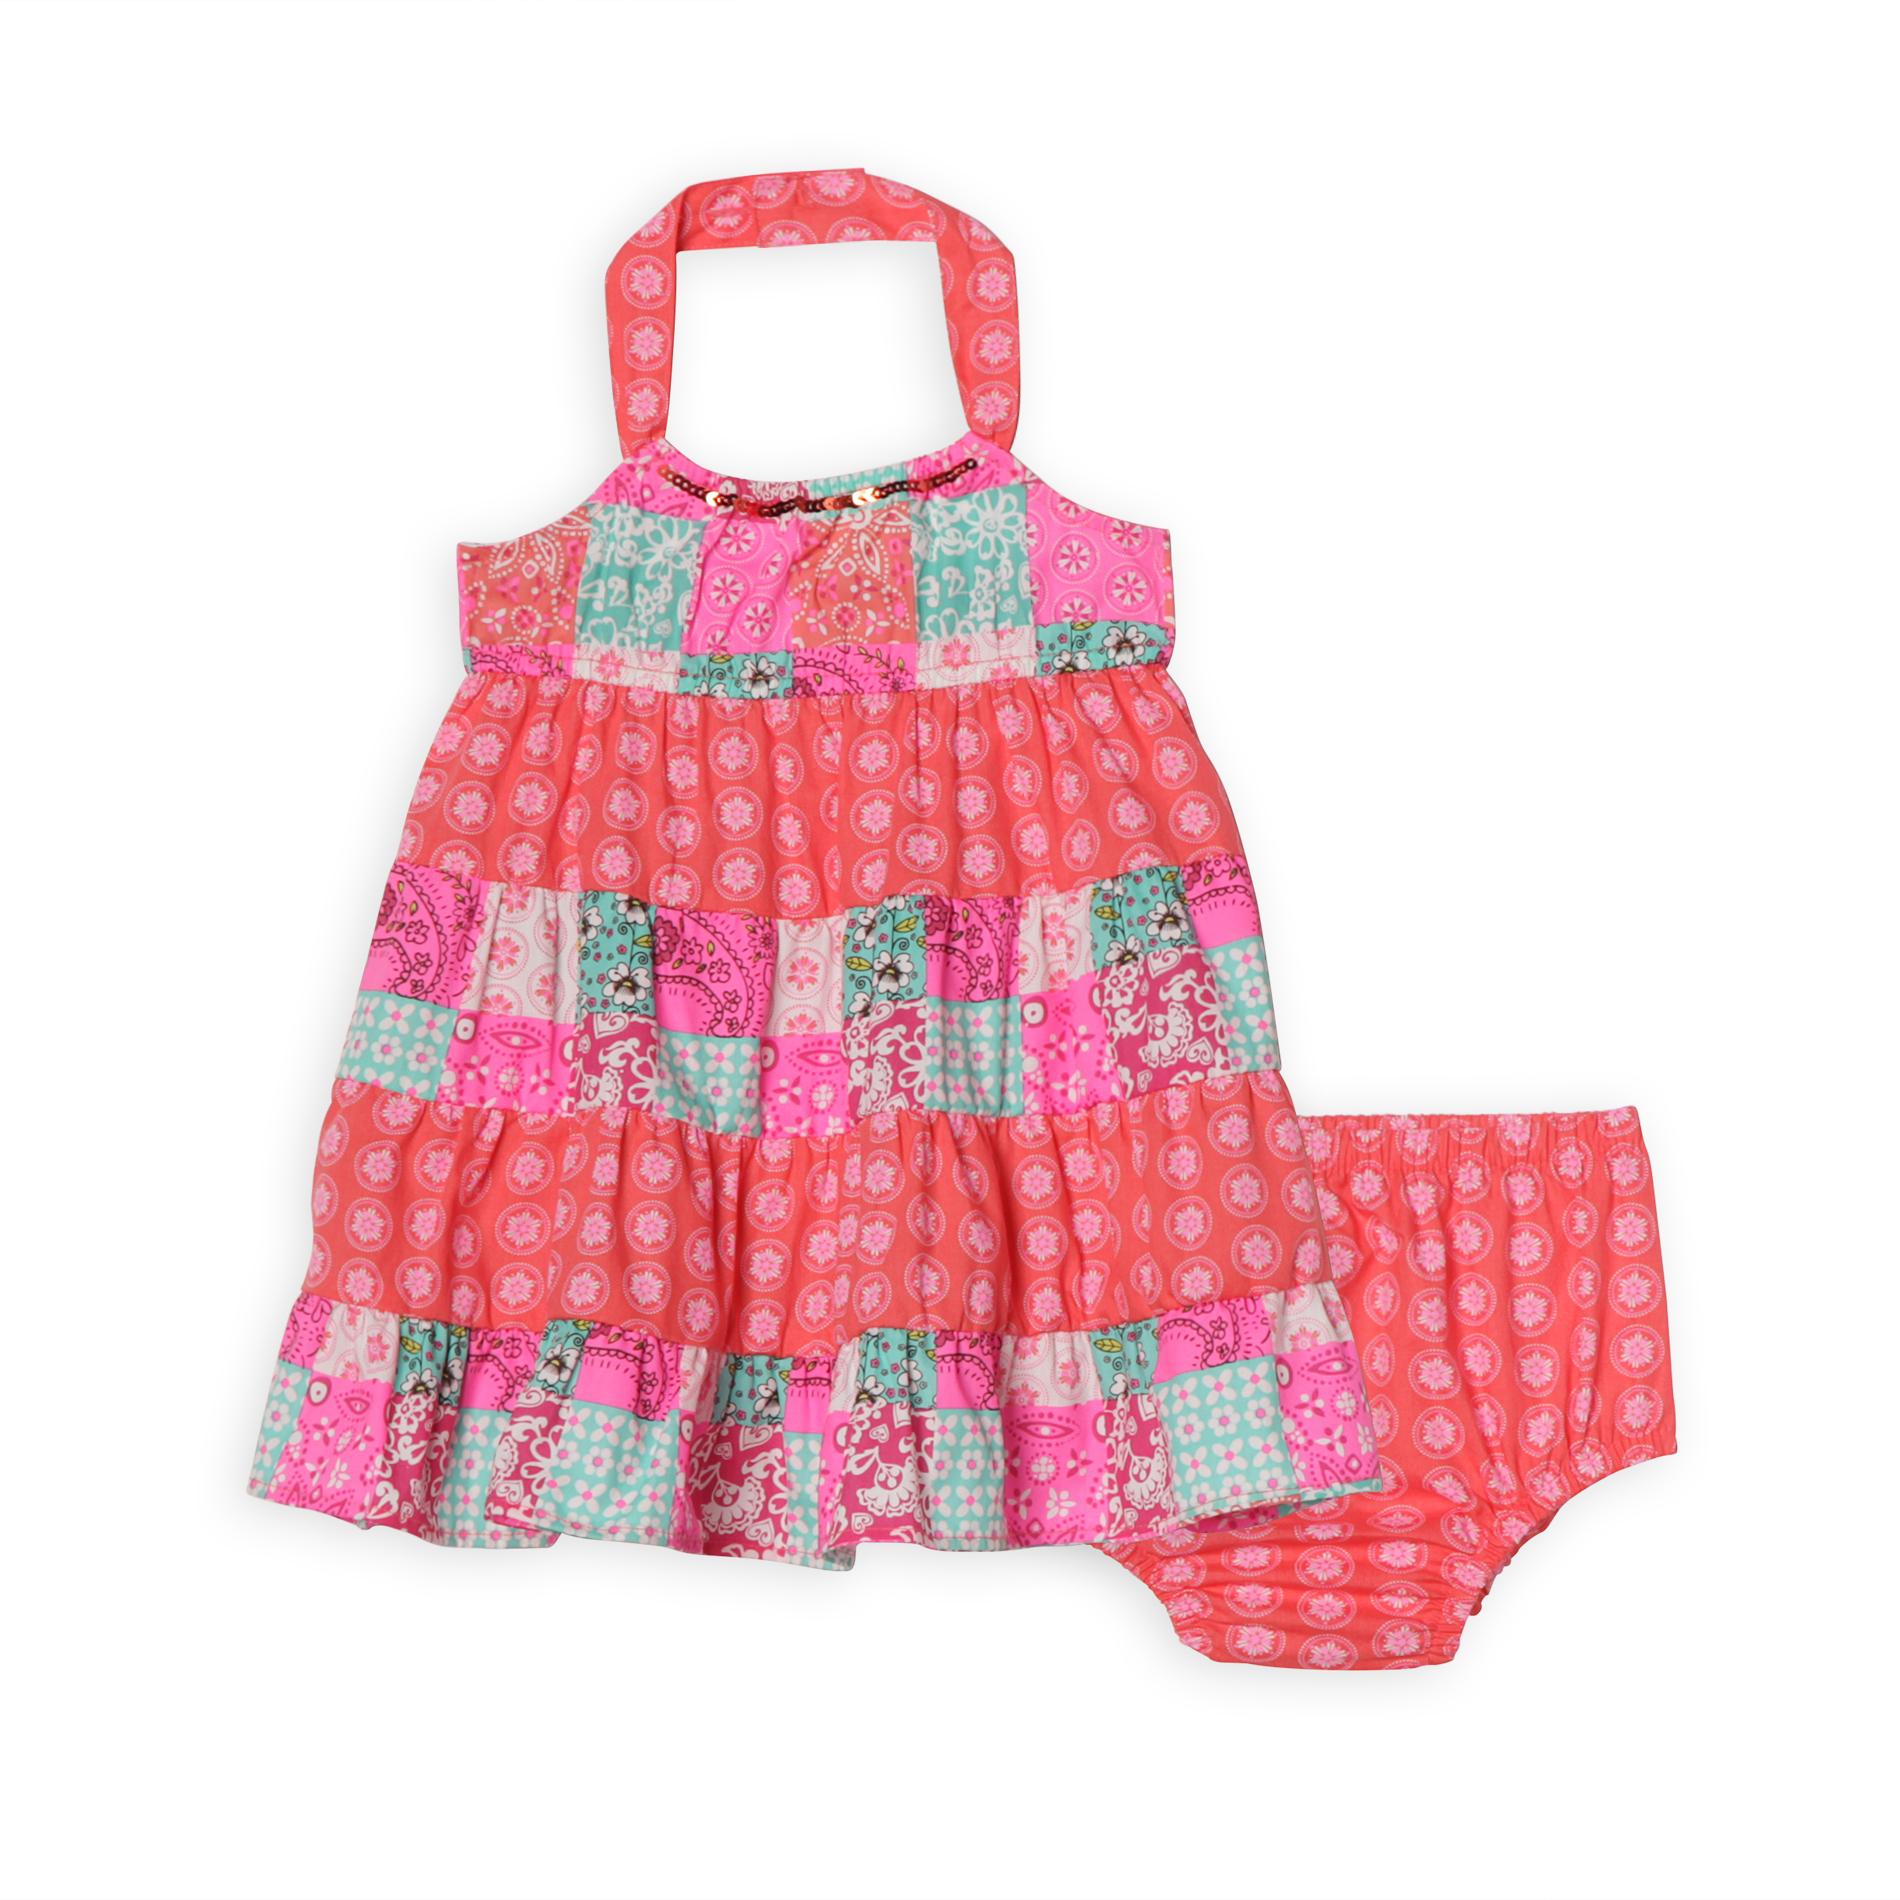 WonderKids Infant & Toddler Girl's Halter Dress - Patchwork